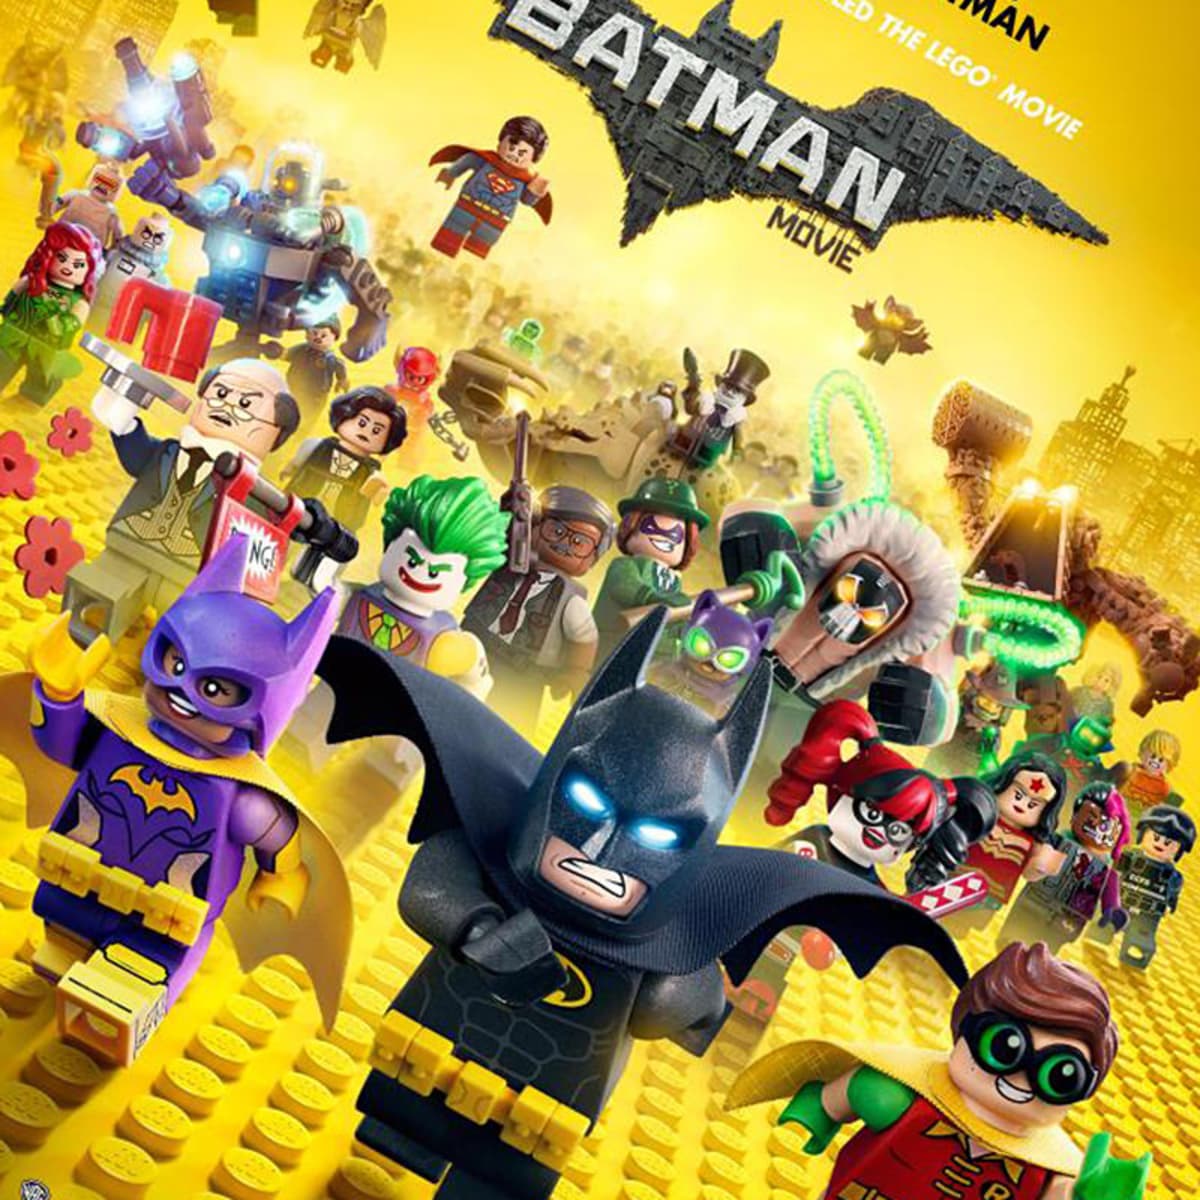 Watch The Lego Batman Movie